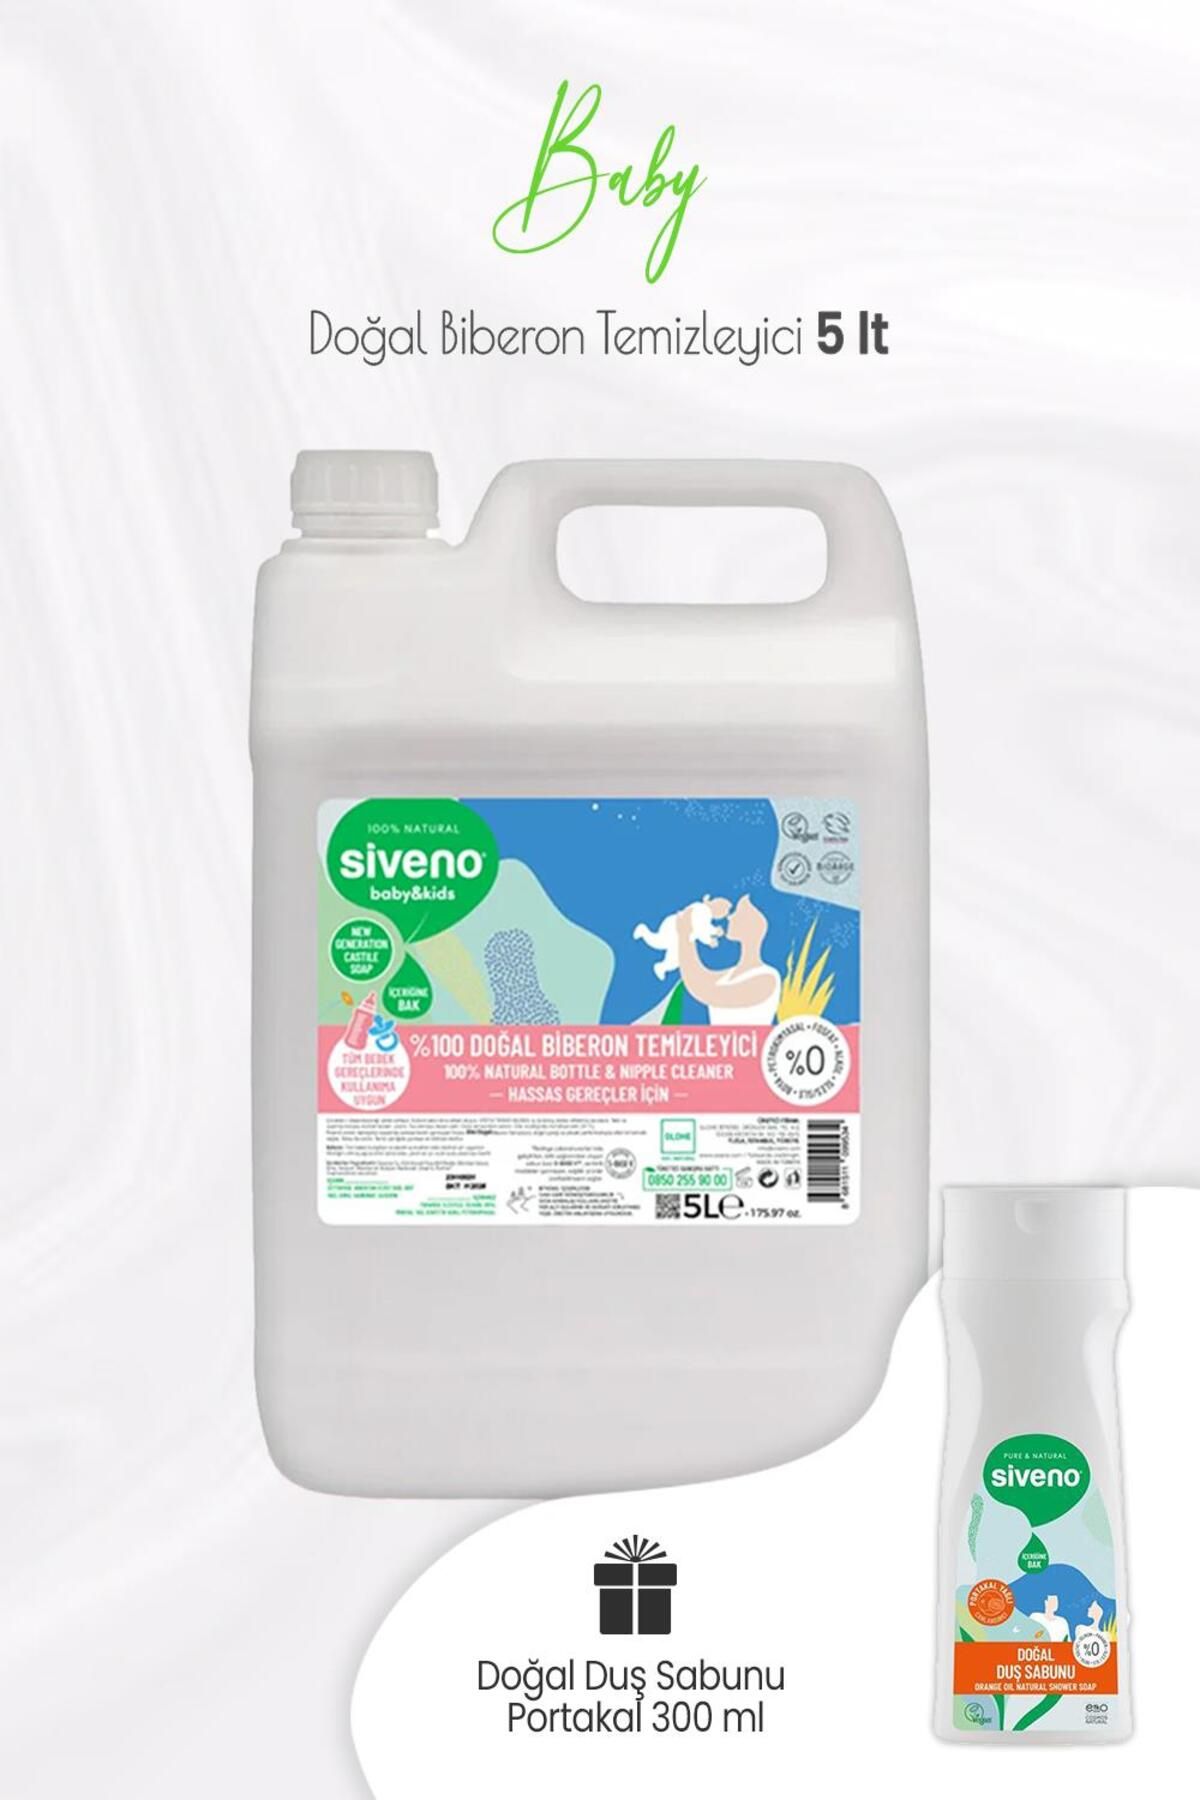 Siveno Baby Biberon Temizleyici 5 Lt Ve Portakal Yağlı Doğal Duş Sabunu 300 ml